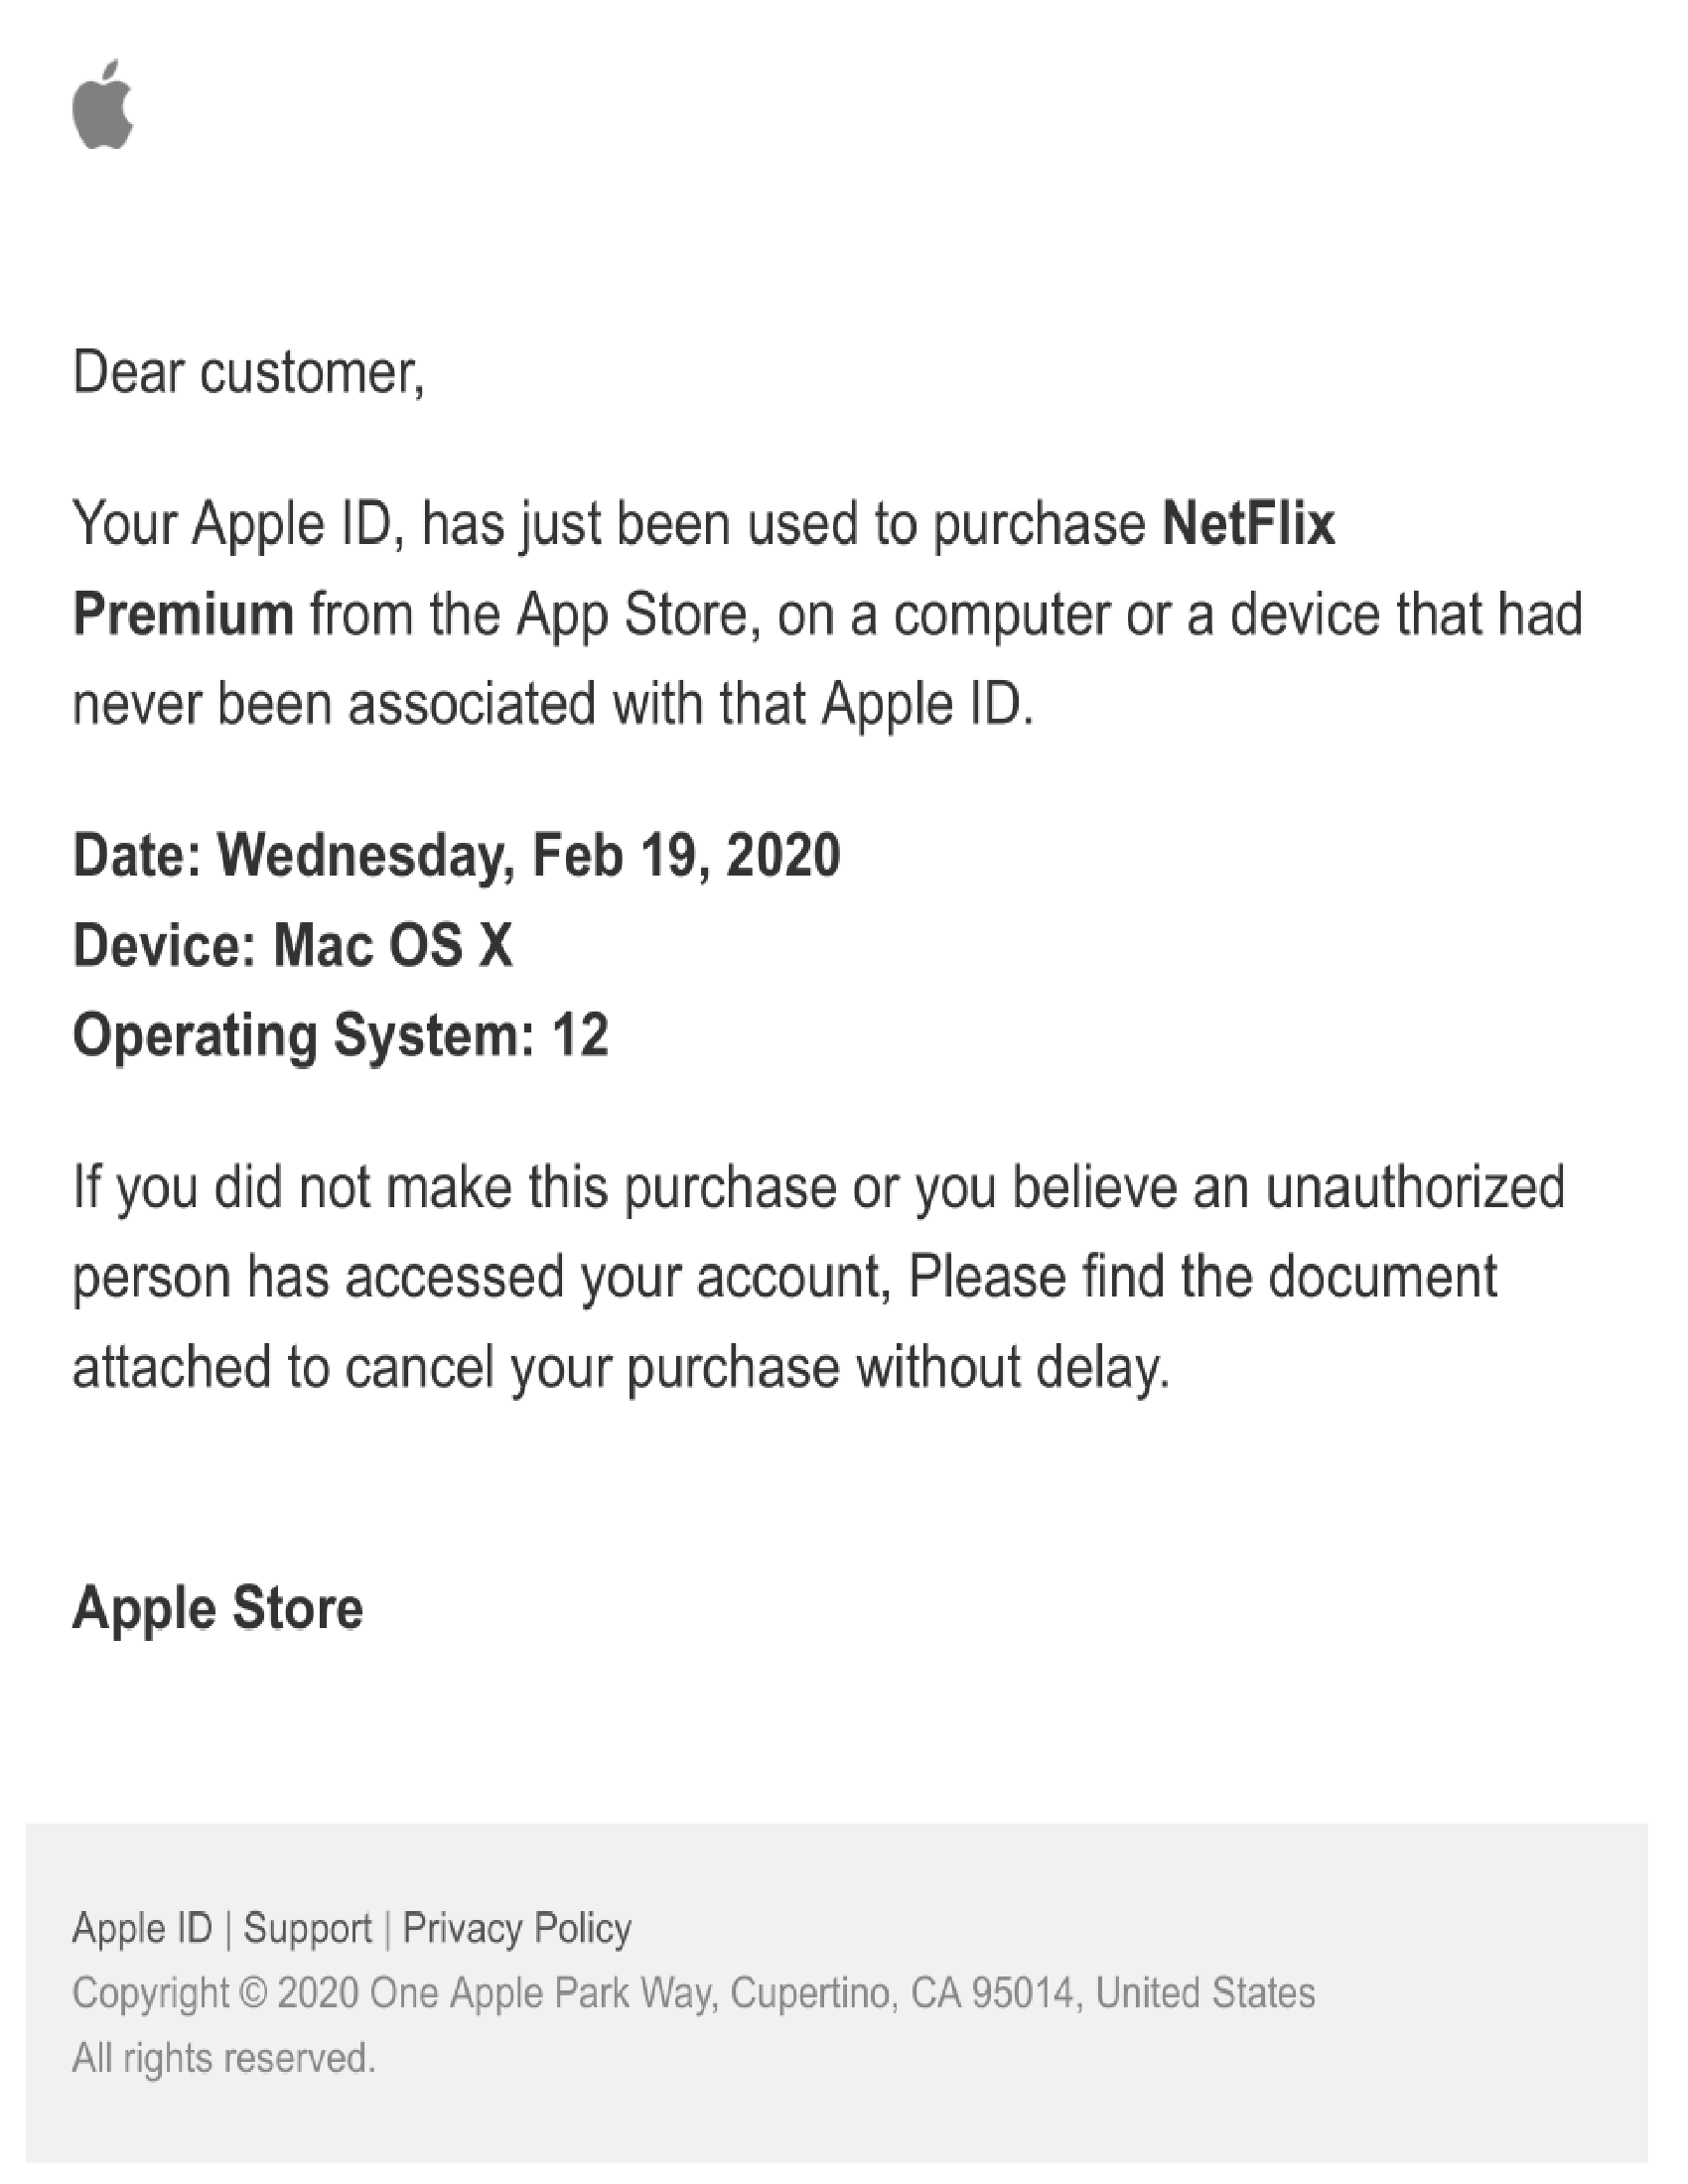 Unauthorized Netflix Subscription Apple Community